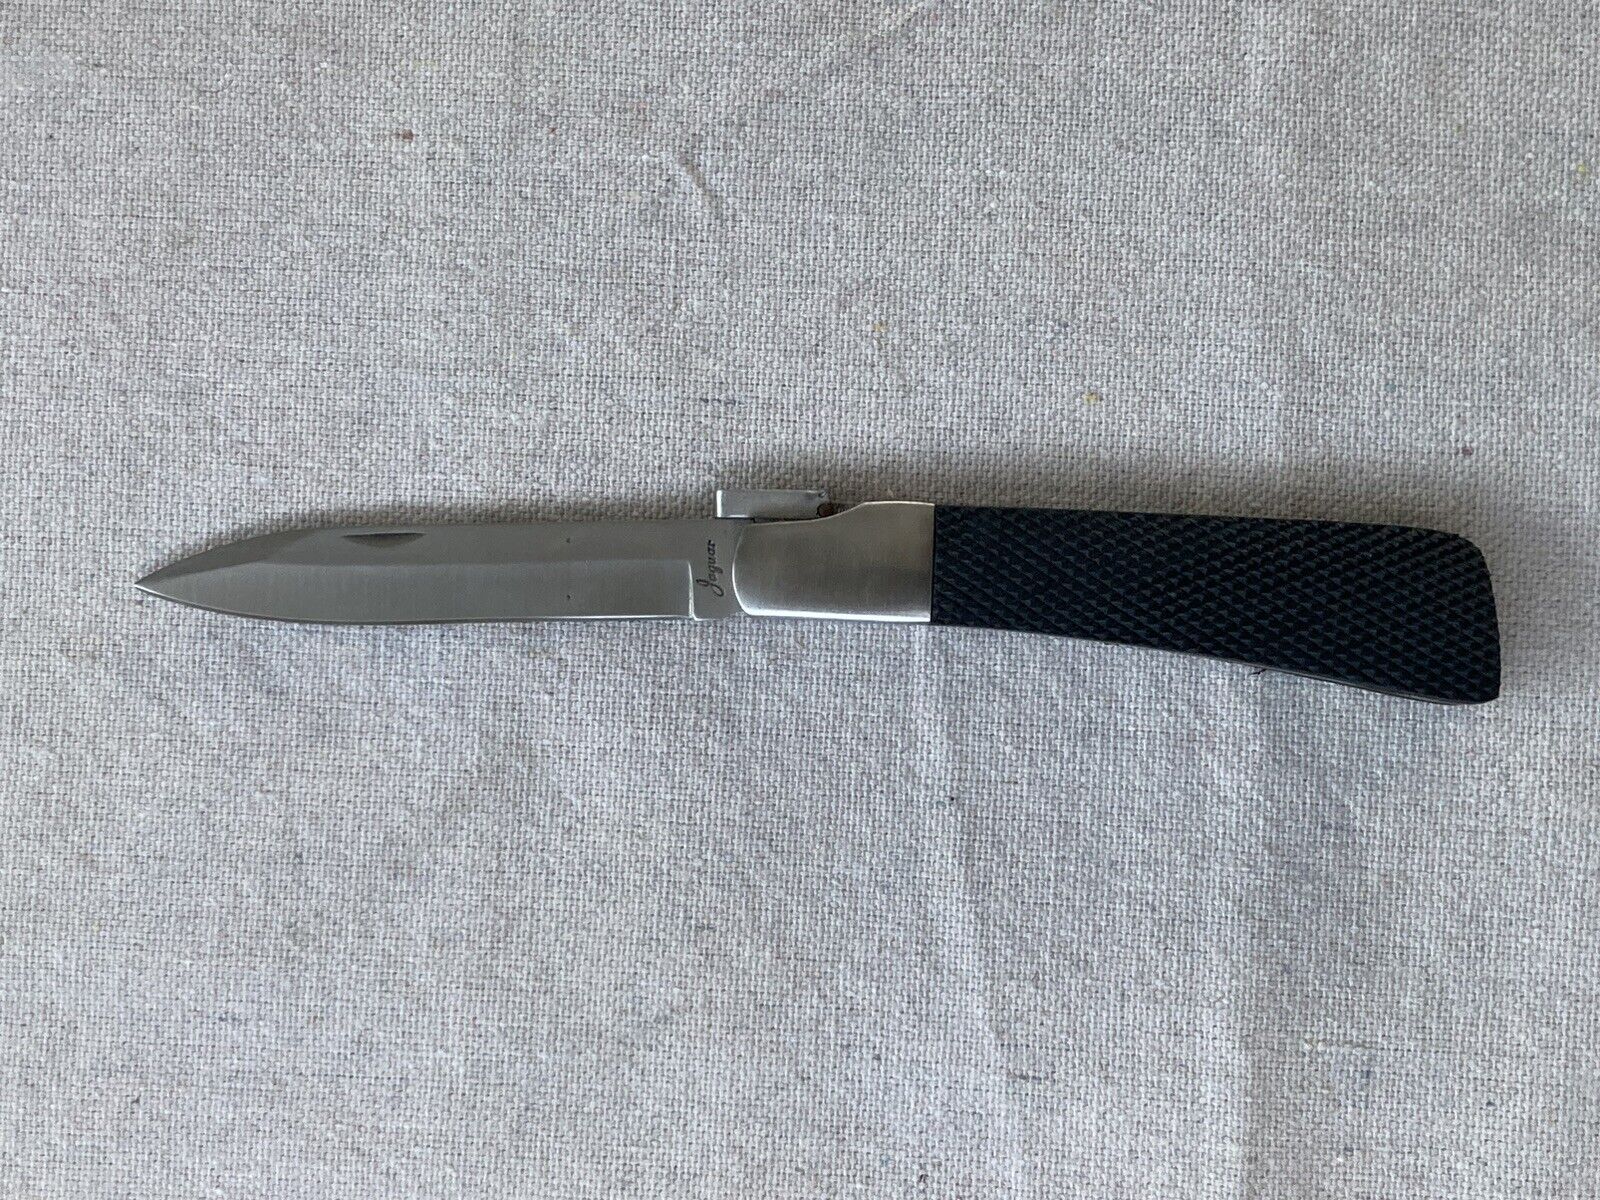 Rare Vintage Jaguar Pocket Knife, With Lever Lock